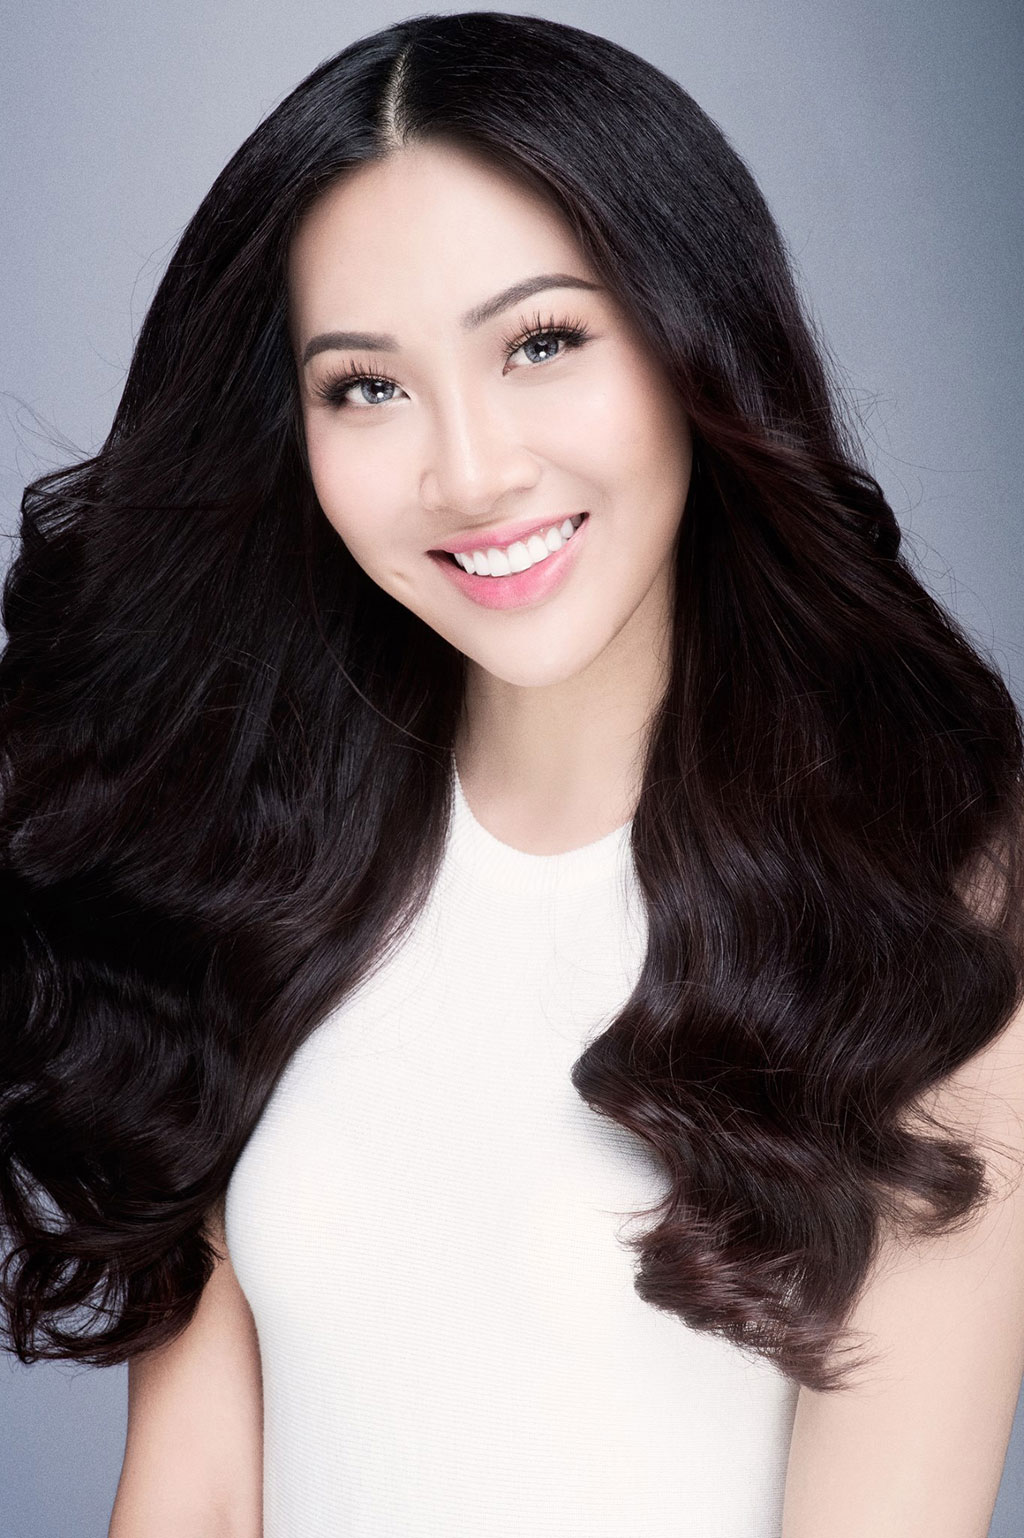 Mặc scandal, Trương Diệu Ngọc vẫn lung linh trên trang chủ Miss World 2